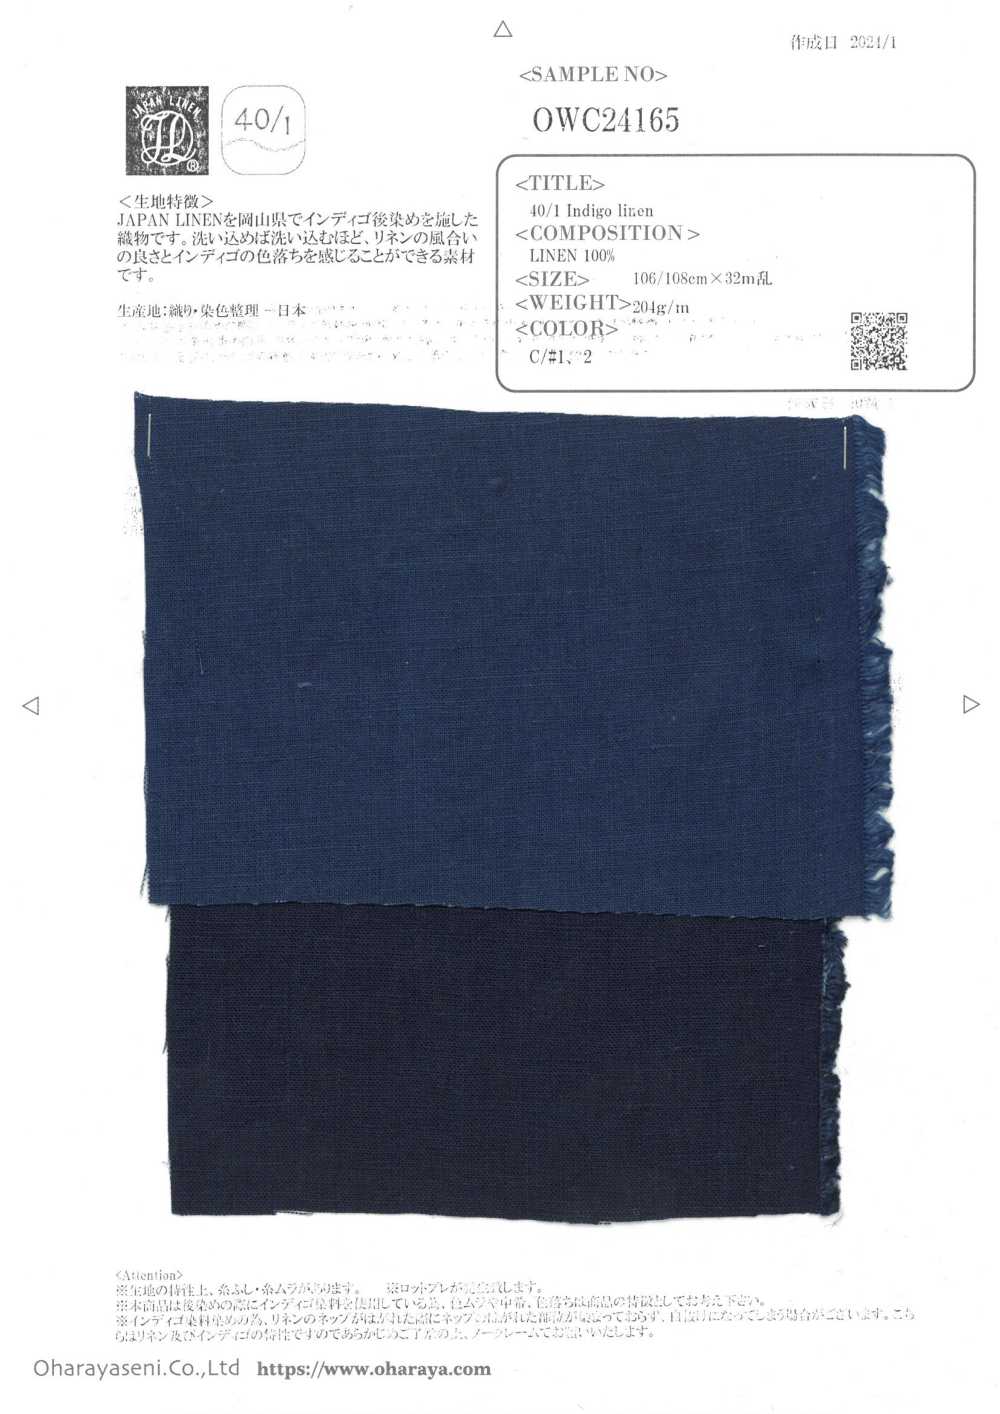 OWC24165 40/1 Indigo Leinen[Textilgewebe] Oharayaseni